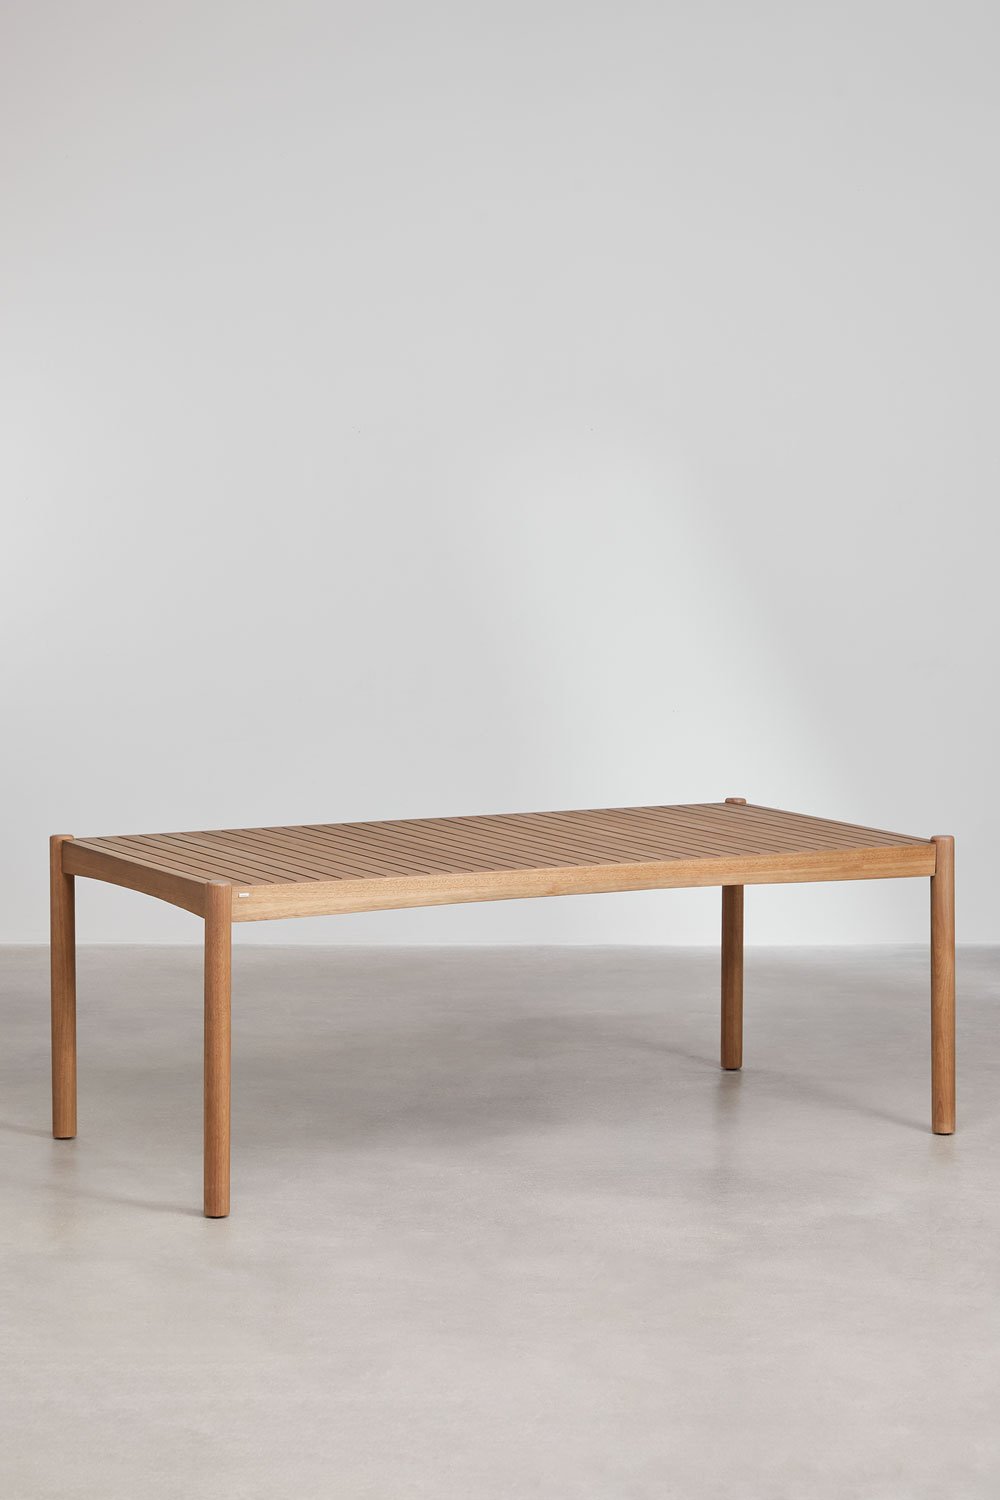 Rechthoekige tafelset (200x100 cm), 2 banken en 2 eetkamerstoelen met armleuningen in eucalyptushout Aderyn, galerij beeld 2